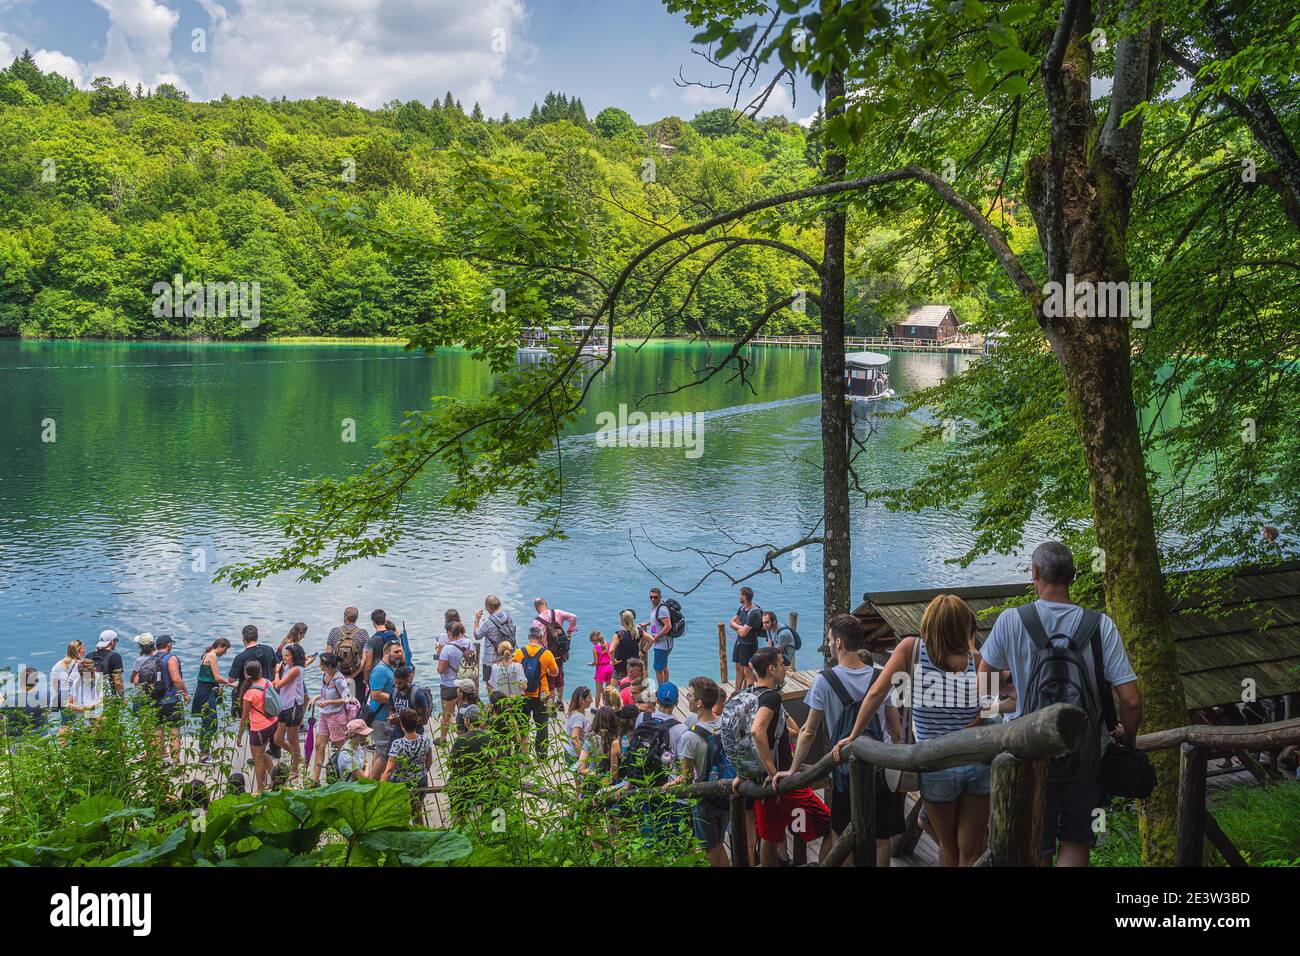 Plitvicka Jezera, Croatie, juillet 2019 des foules massives et des files d'attente pour le ferry pour traverser le lac dans le parc national des lacs de Plitvice patrimoine mondial de l'UNESCO Banque D'Images